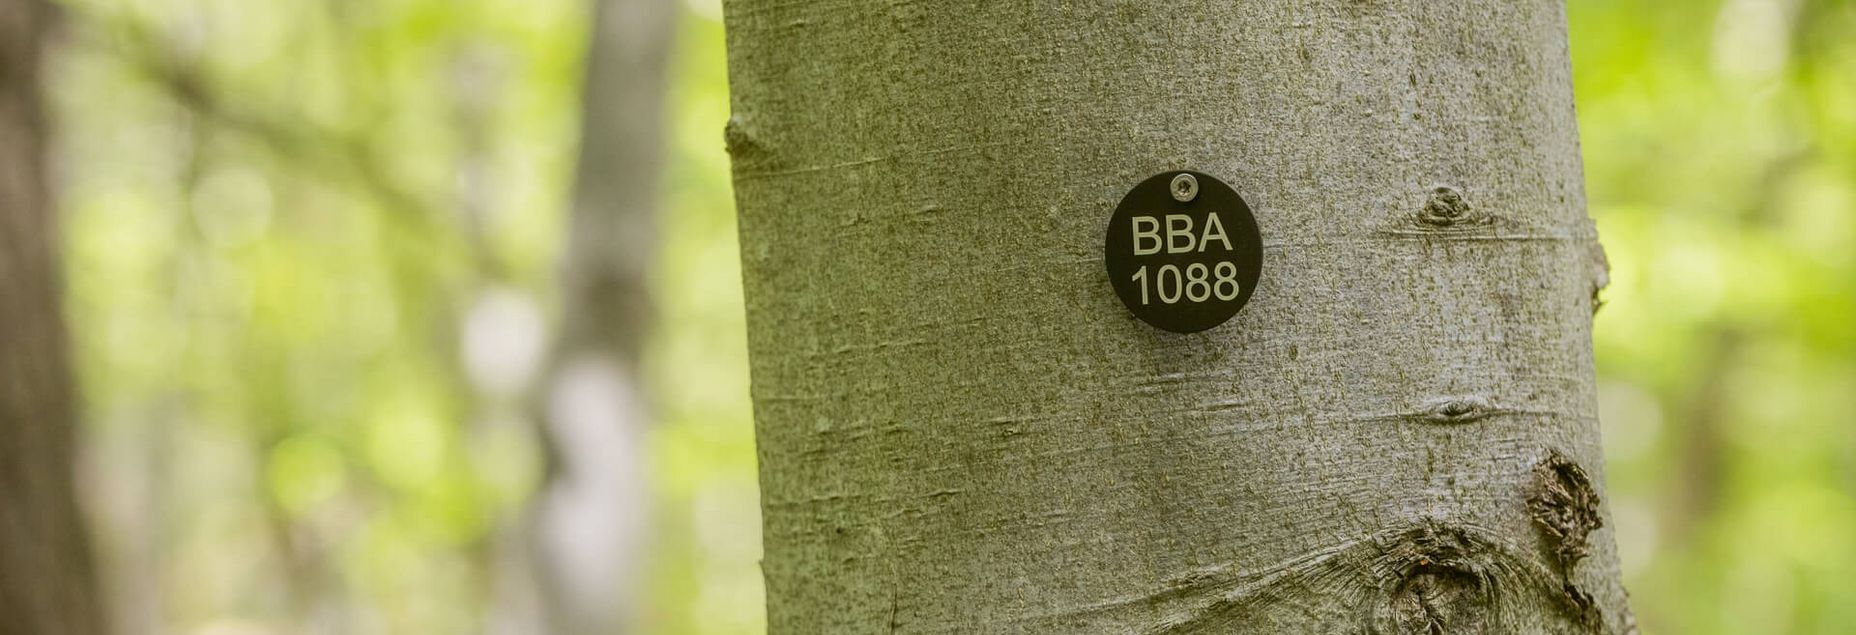 Baum BBA 1088 - Plakette